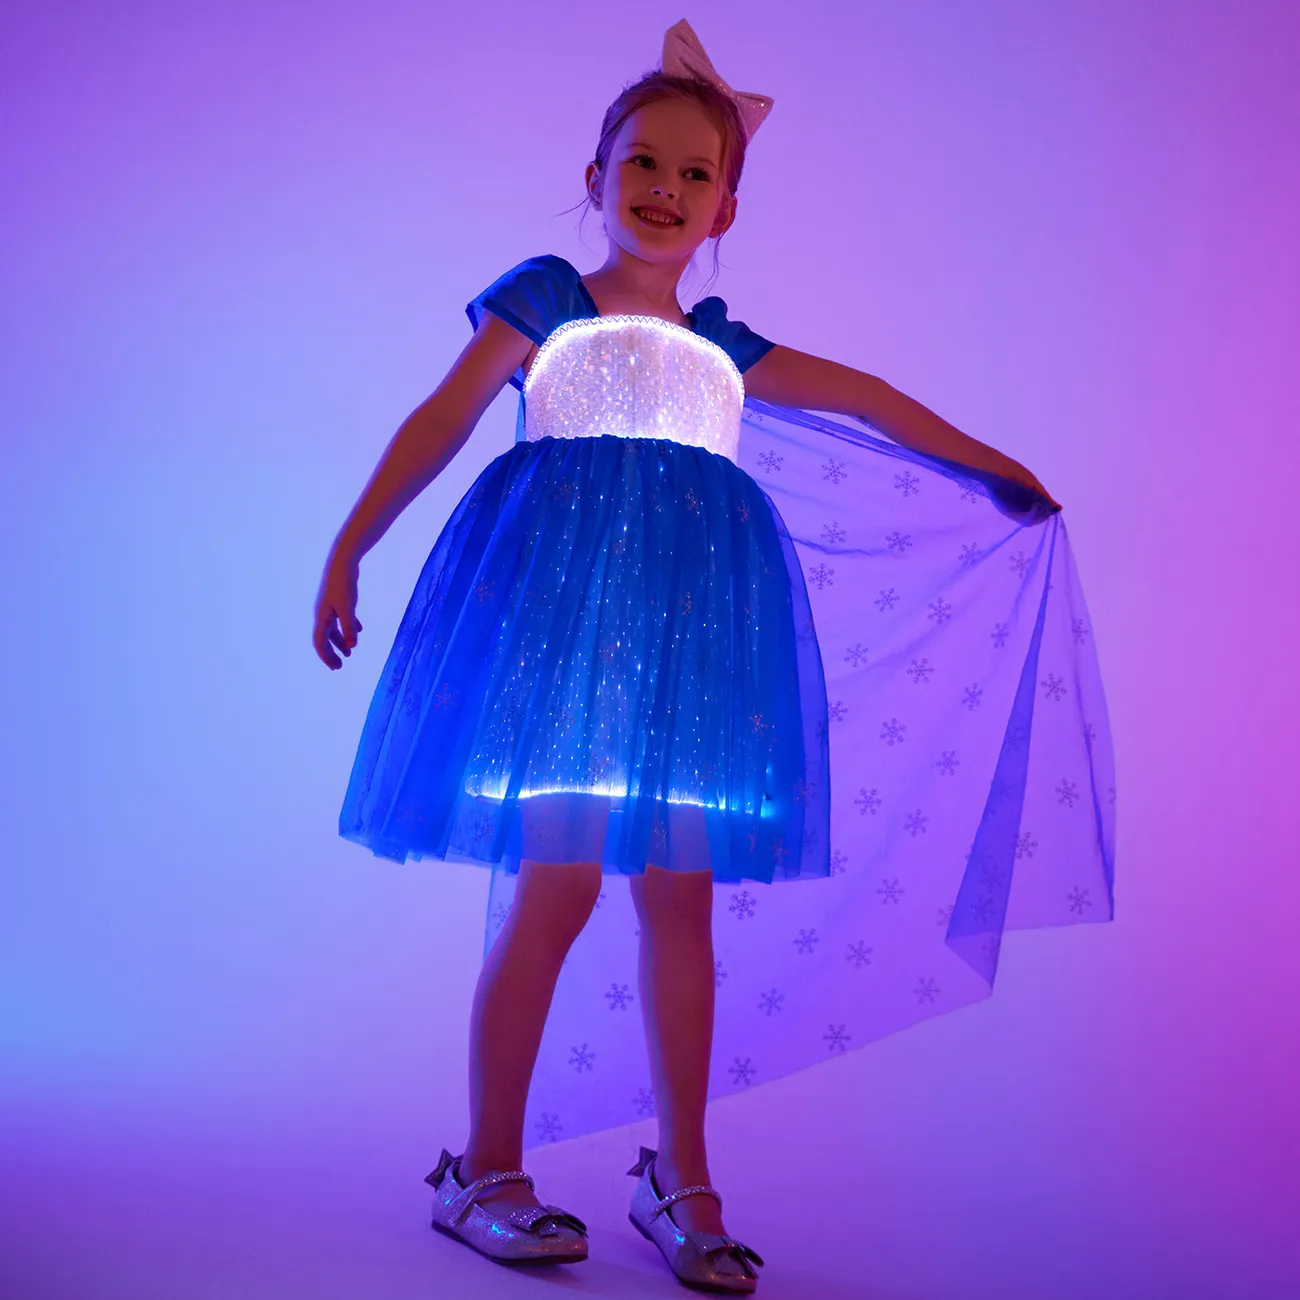 Go-Glow Light Up Blaues Partykleid mit paillettenbesetztem Schneeflocken-Glitzer und abnehmbarem Umhang inklusive Controller (eingebauter Akku) dunkelblau / weiß big image 1